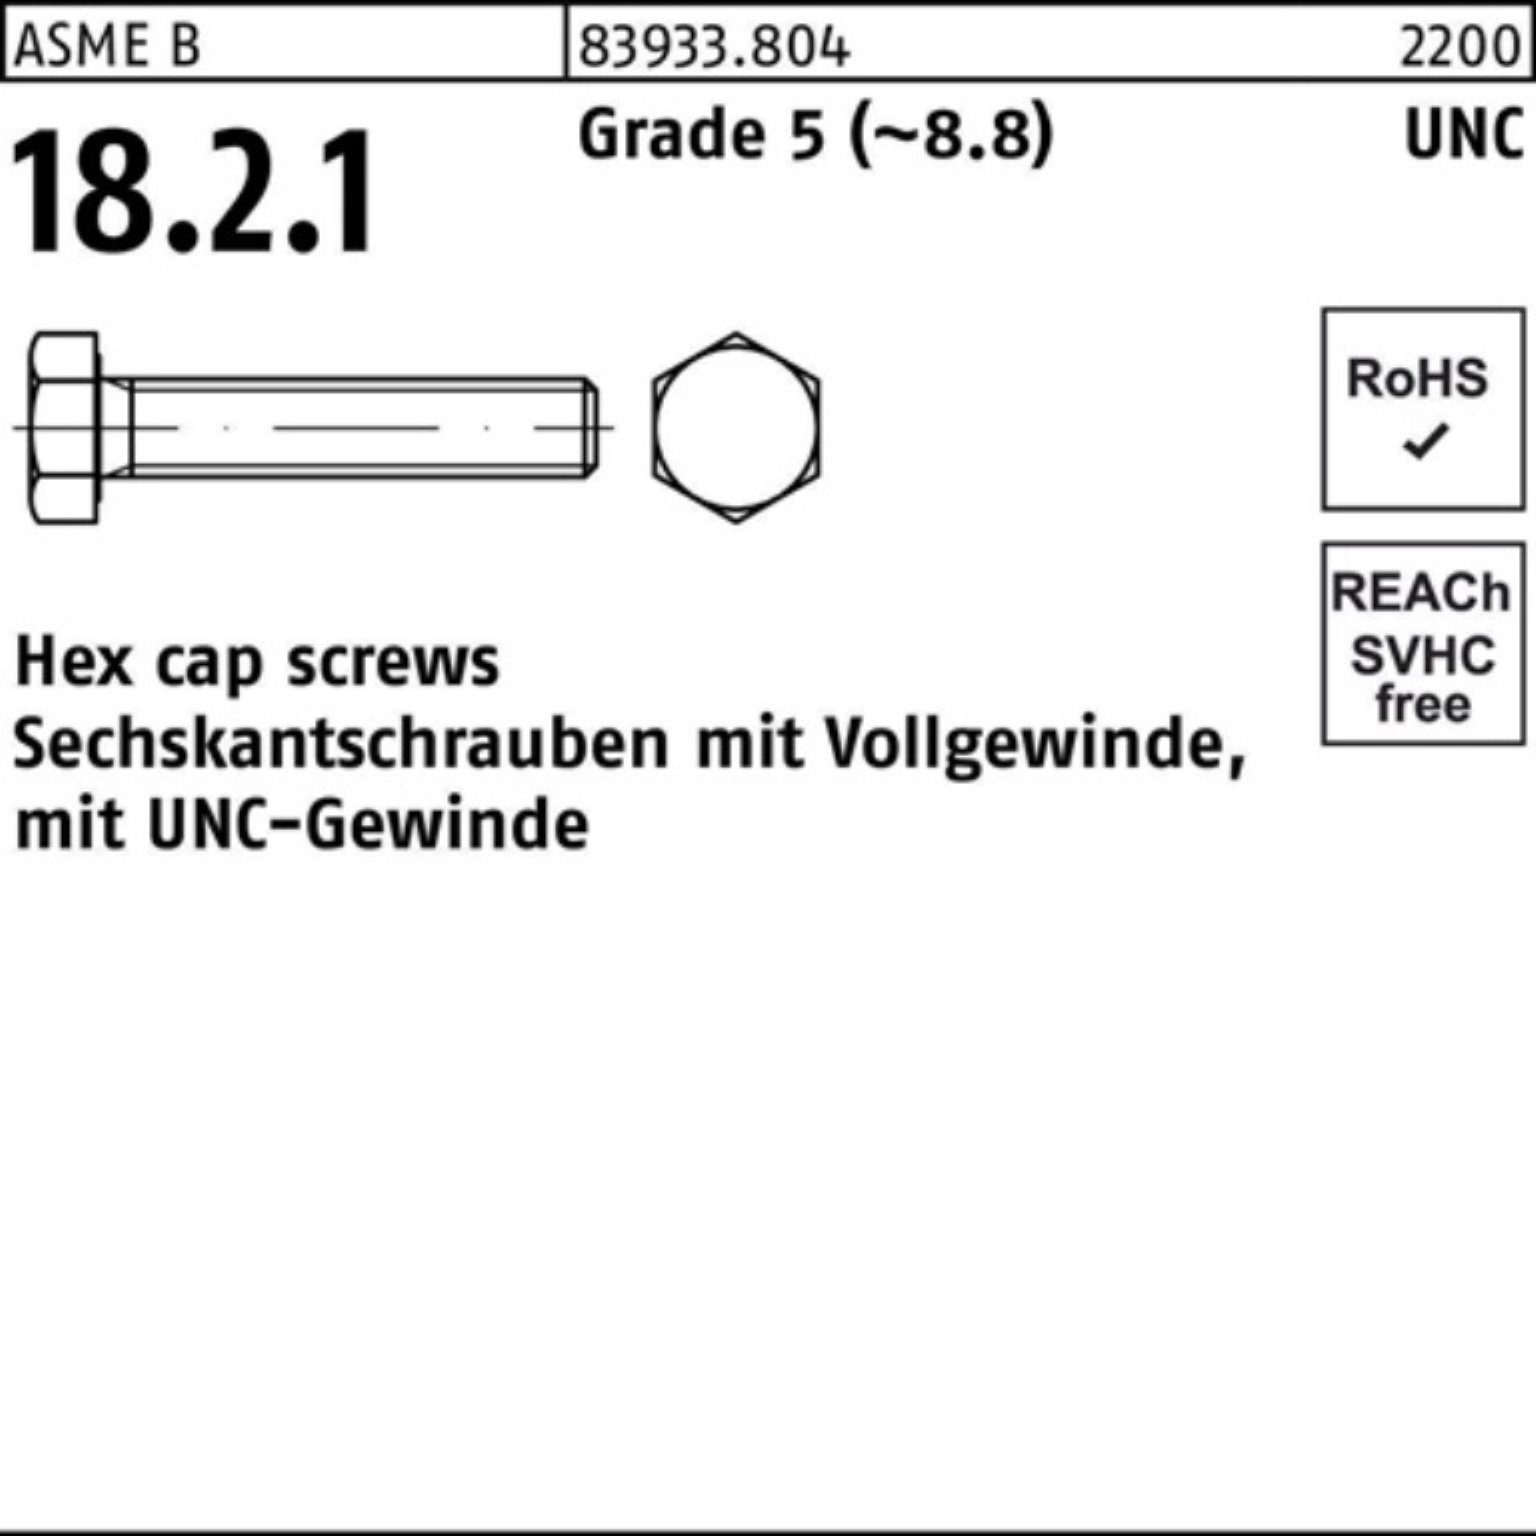 Reyher Sechskantschraube 100er Pack Sechskantschraube R 83933 UNC-Gewinde VG 7/16x 1 1/4 Grade